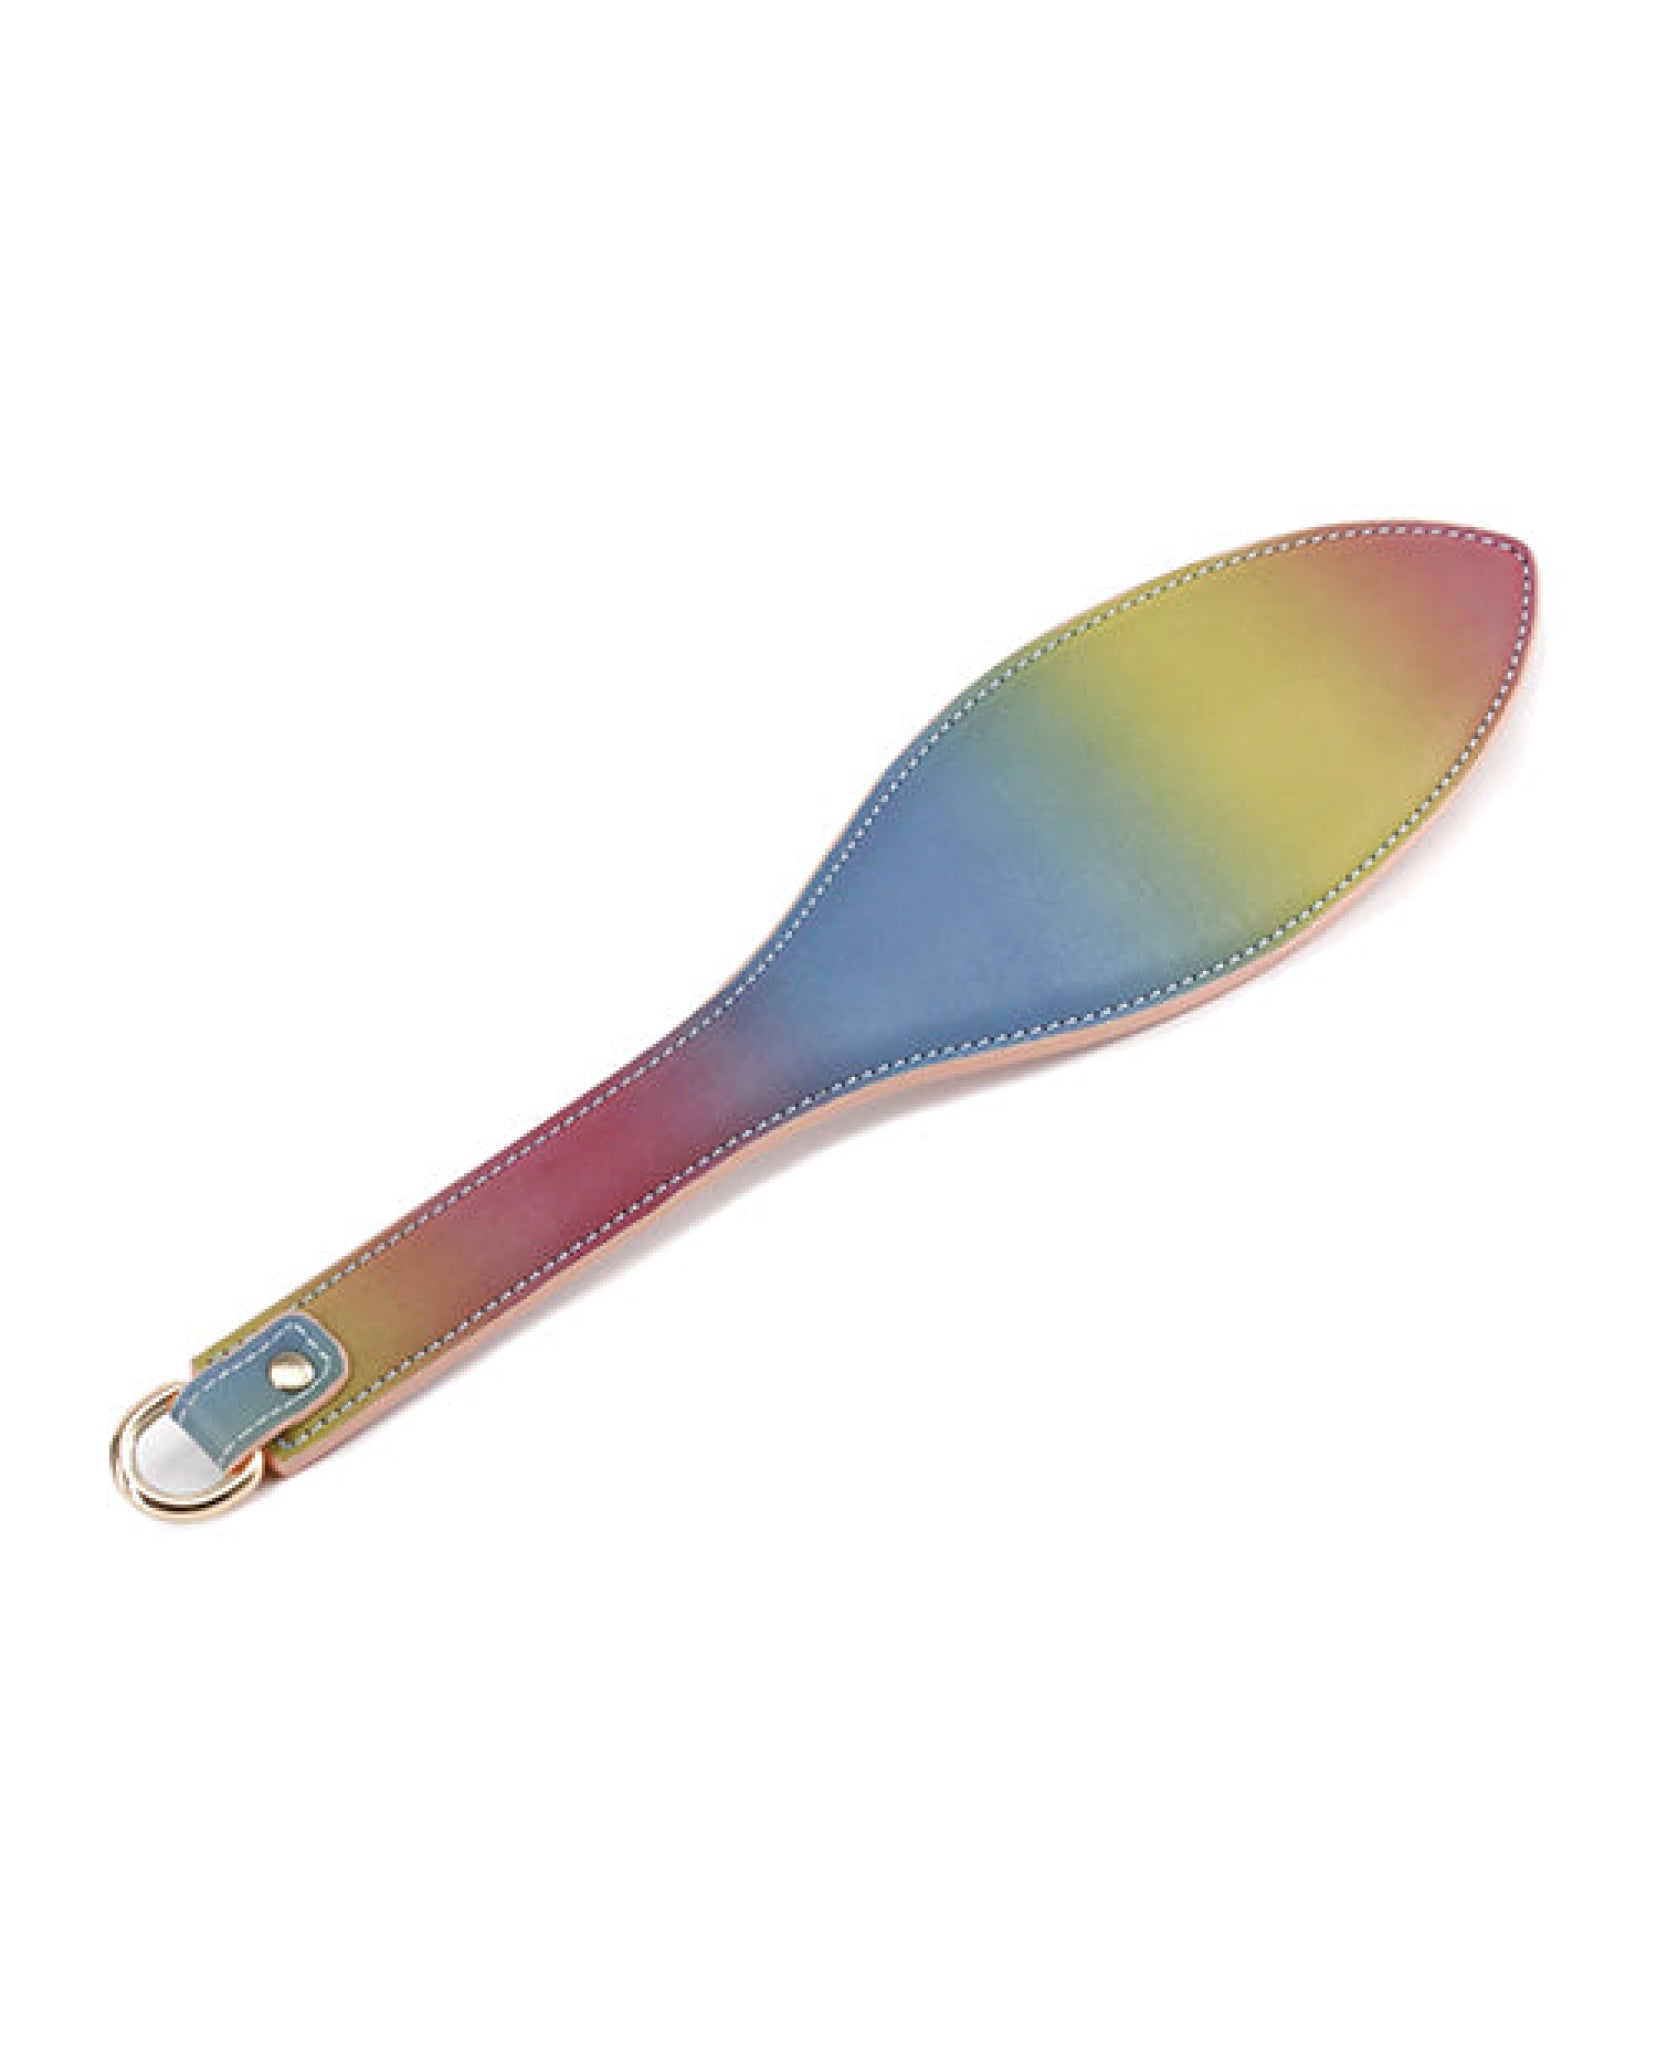 Spectra Bondage Paddle - Rainbow Spectra